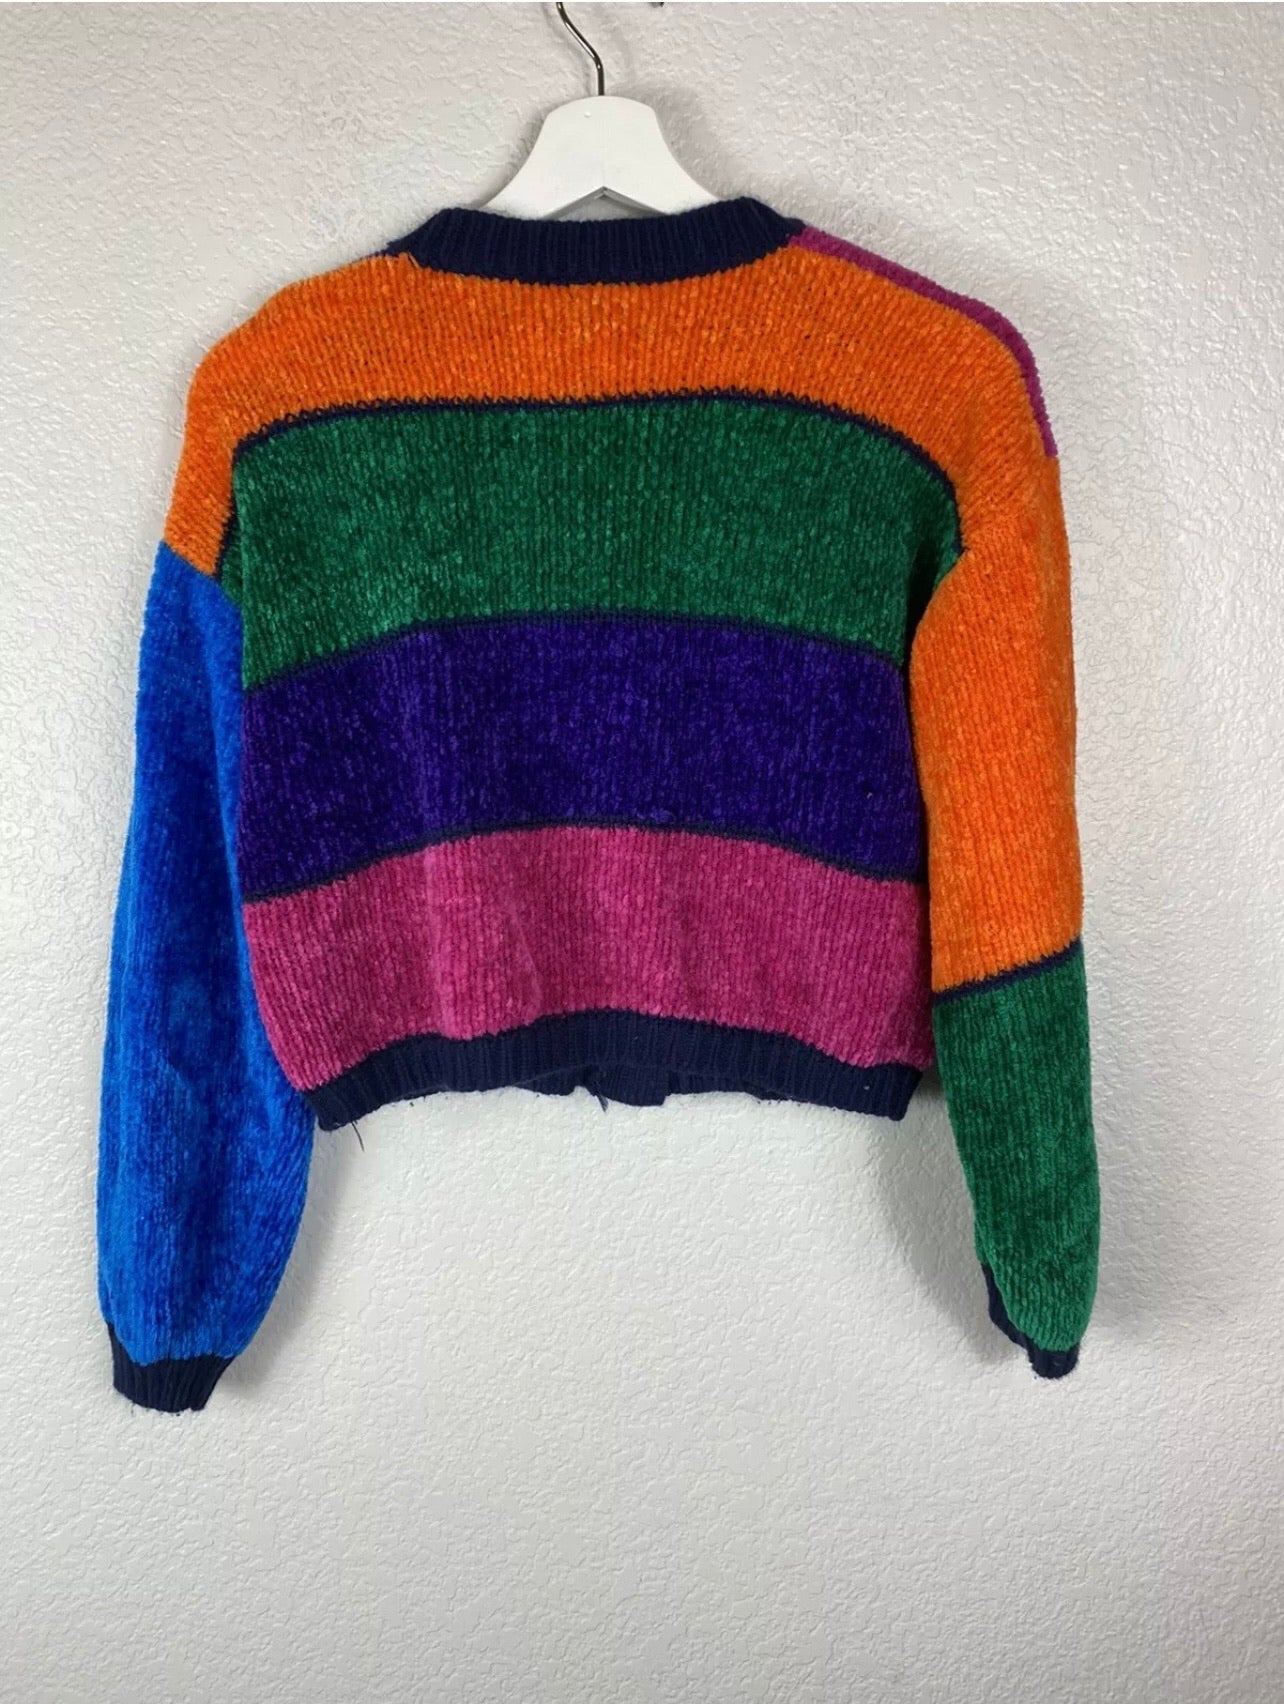 Vintage Un Deux Trios Colorful Sweater/Cardigan Top Size M-L